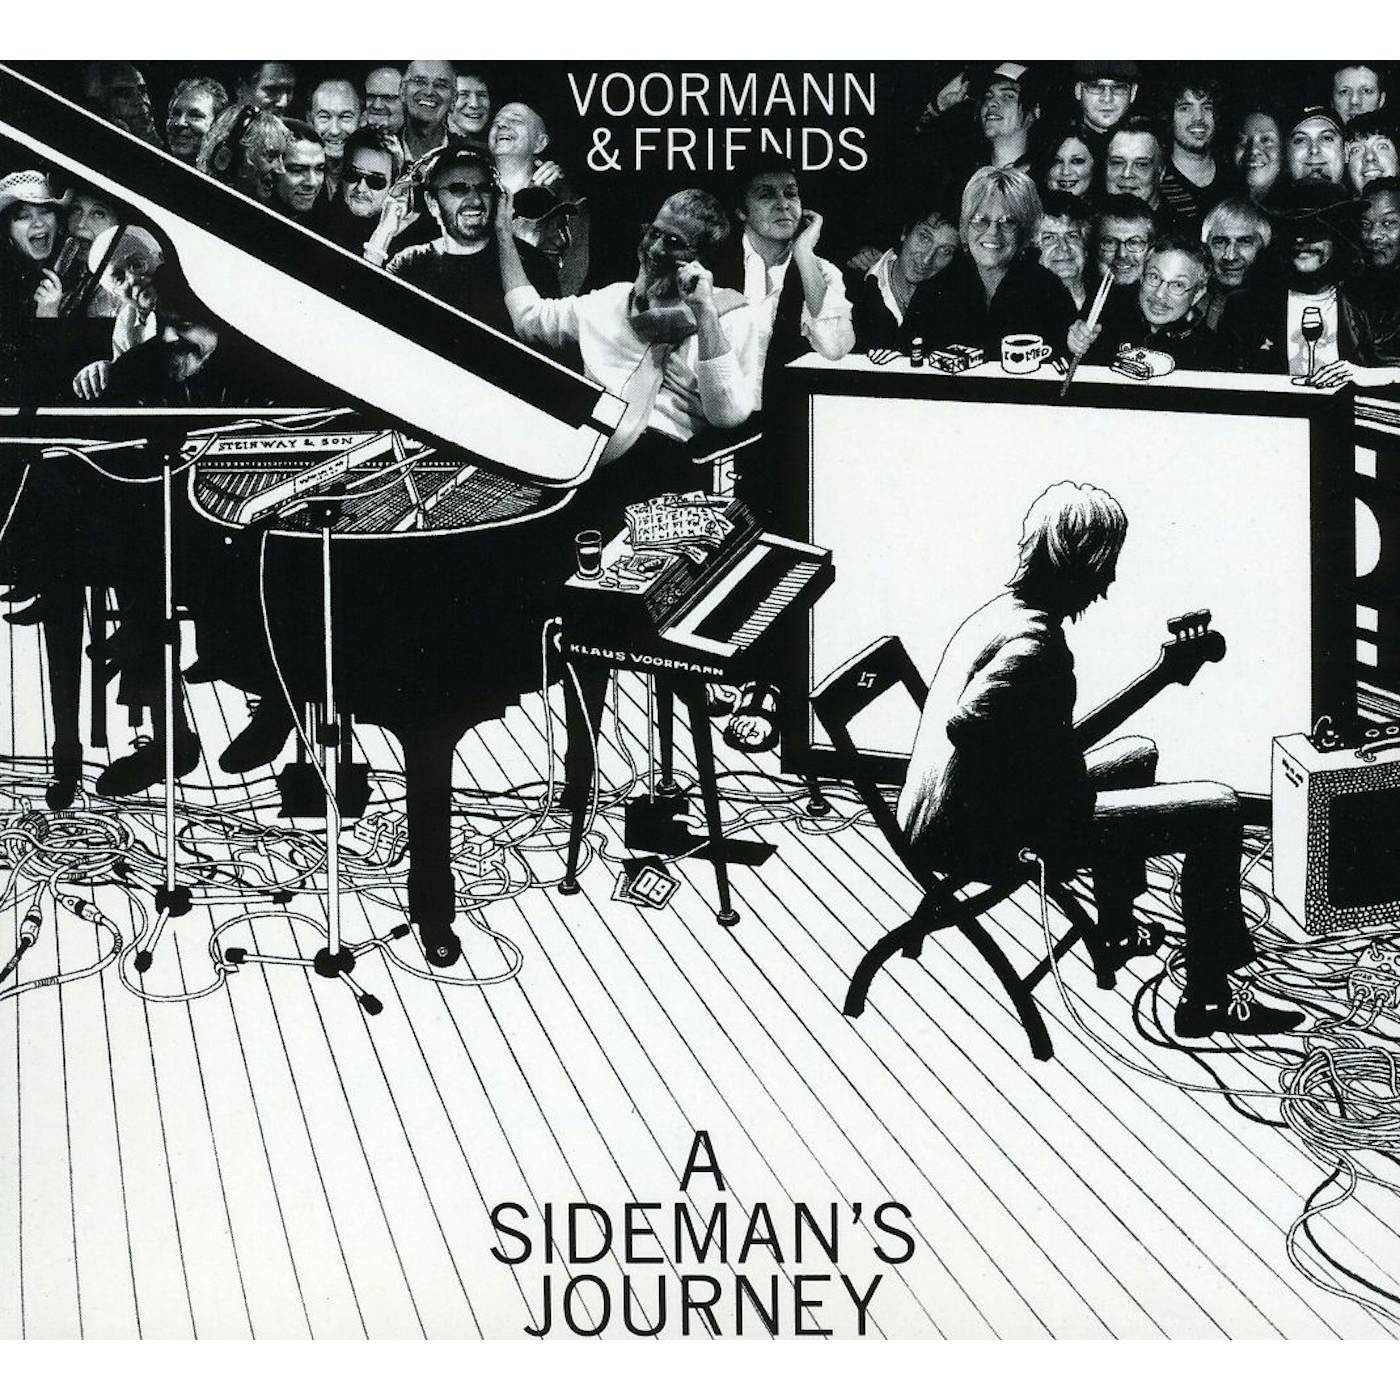 Voormann & Friends SIDEMAN'S JOURNEY CD